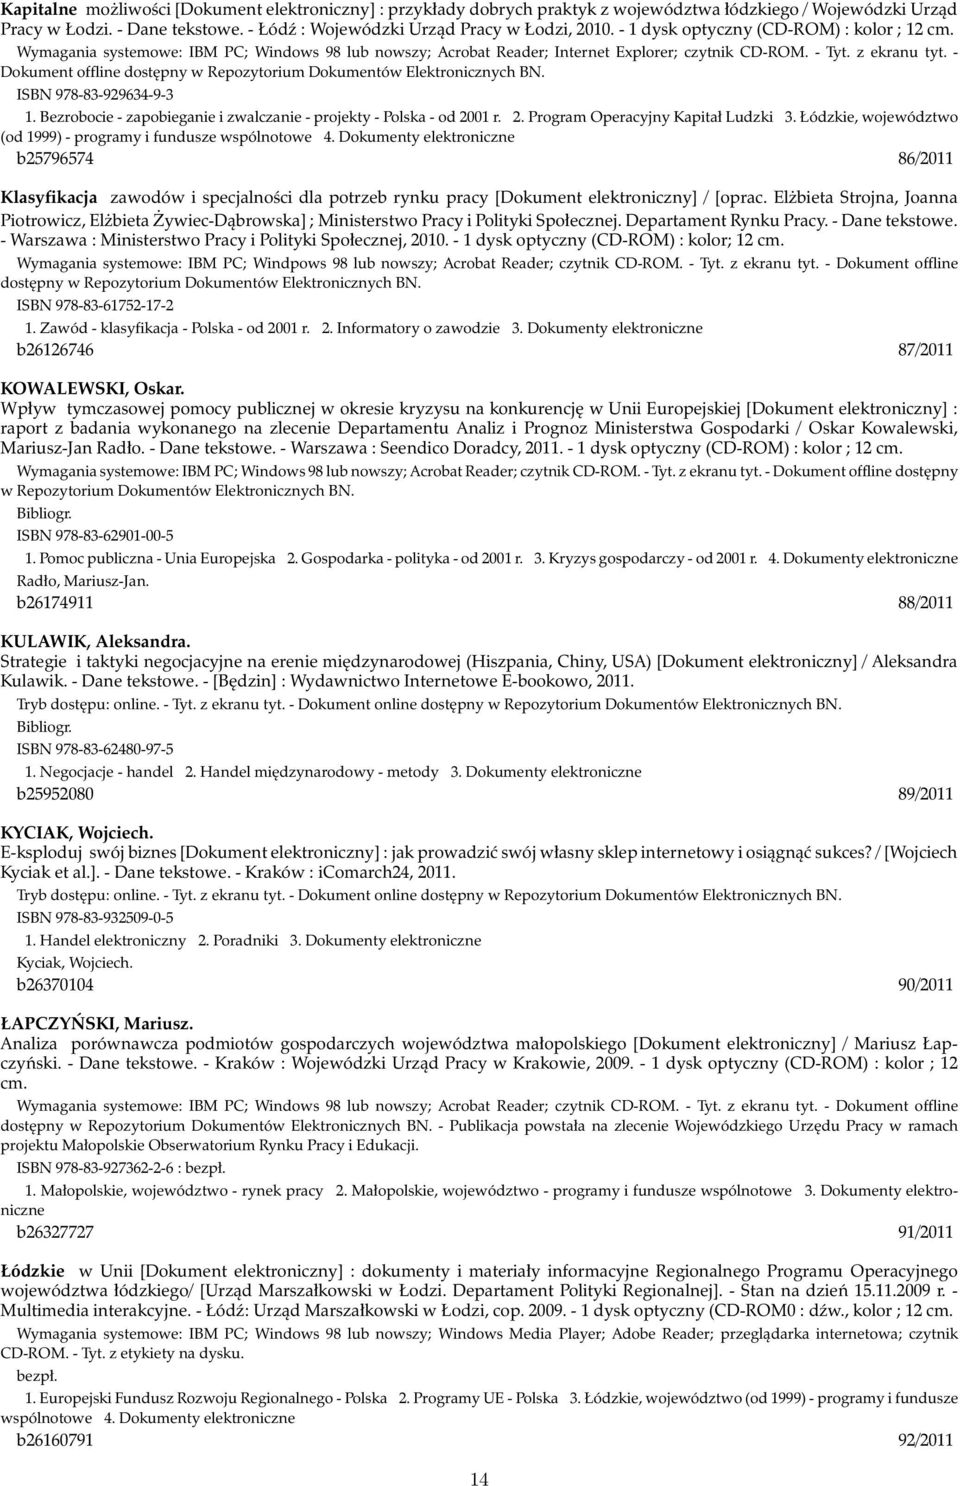 - Dokument offline dostępny ISBN 978-83-929634-9-3 1. Bezrobocie - zapobieganie i zwalczanie - projekty - Polska - od 2001 r. 2. Program Operacyjny Kapitał Ludzki 3.